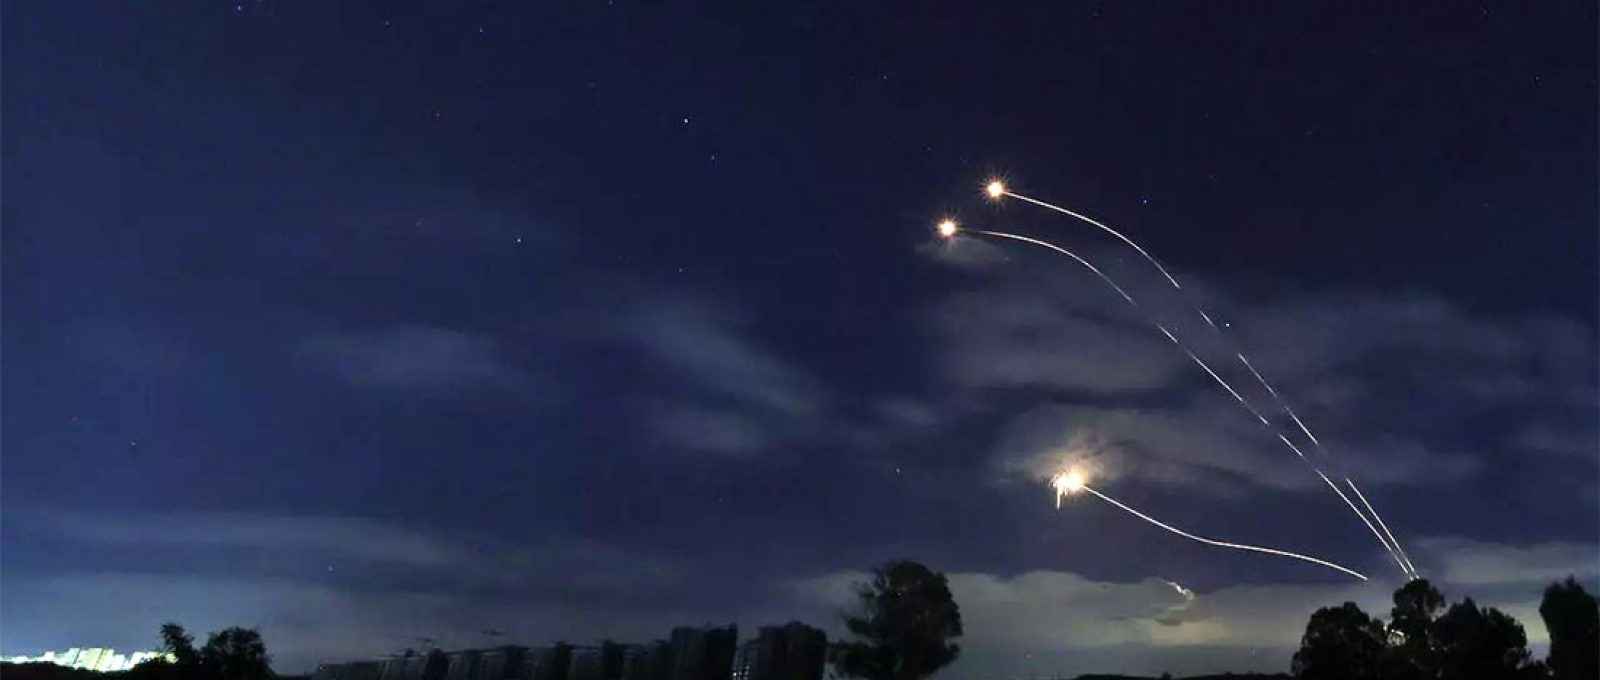 Foto tirada de Sderot, no sul de Israel, na fronteira com Gaza, mostra foguetes disparados pelo sistema de defesa anti-mísseis Iron Dome de Israel, em 13 de maio de 2021 (Foto: Emmanuel Dunand/AFP).